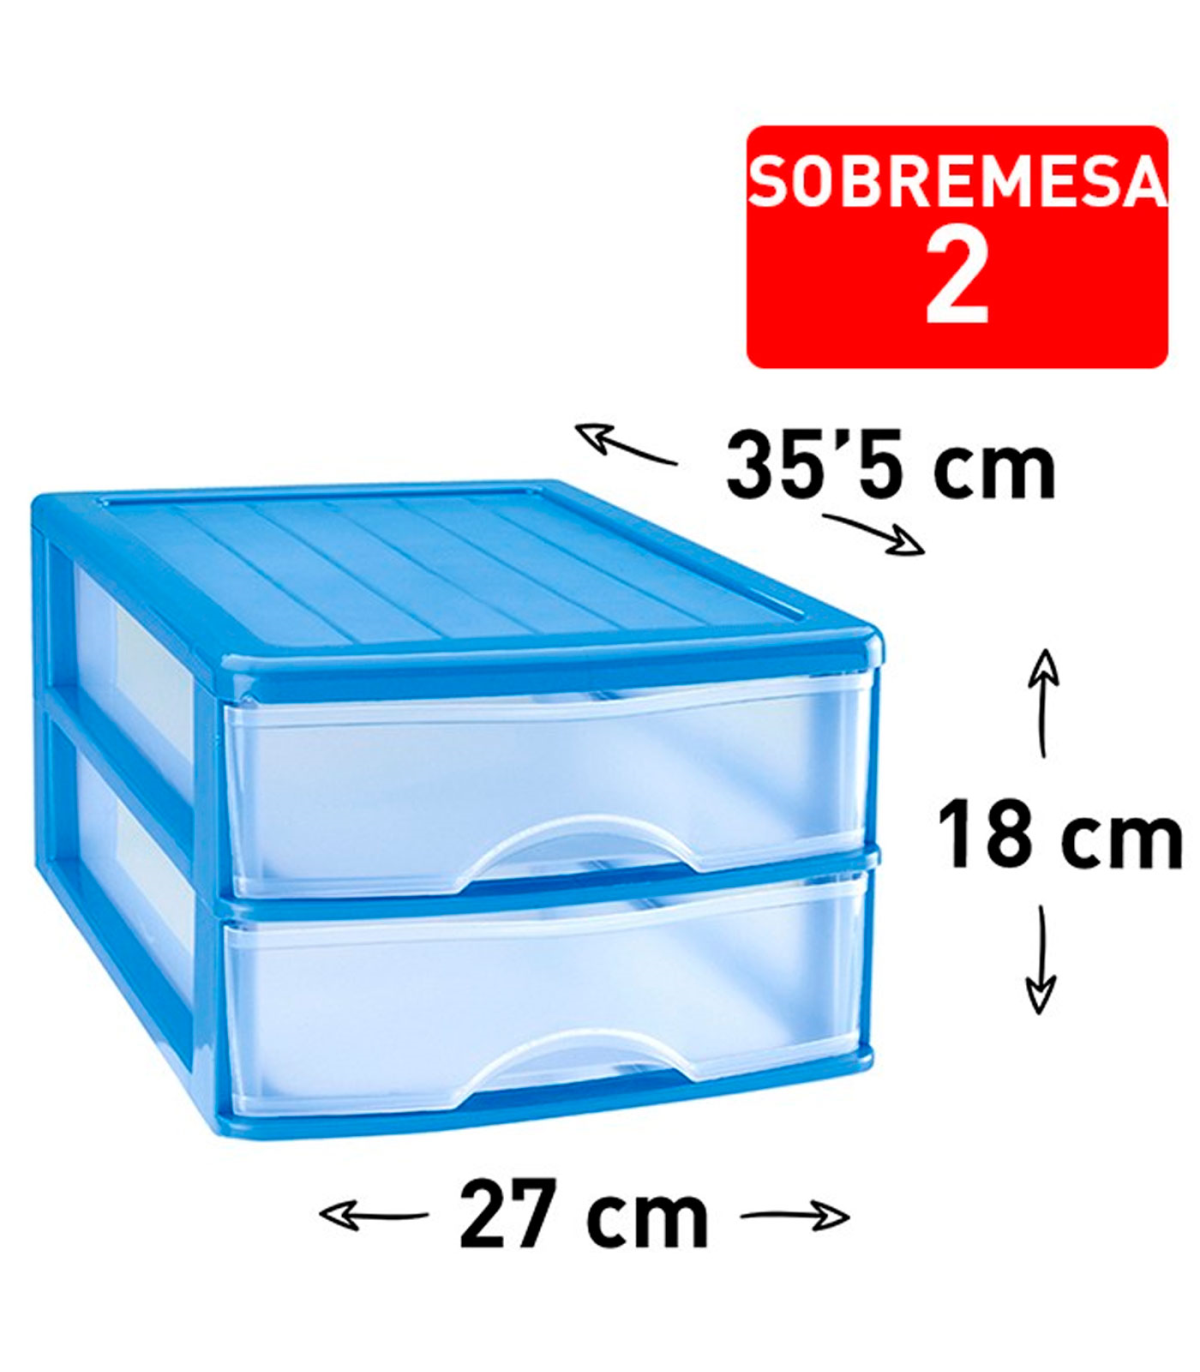 Tradineur - Cajonera sobremesa plástico con 3 cajones transparentes, torre  de almacenaje multiusos, ordenación, hogar, 26 x 27 x